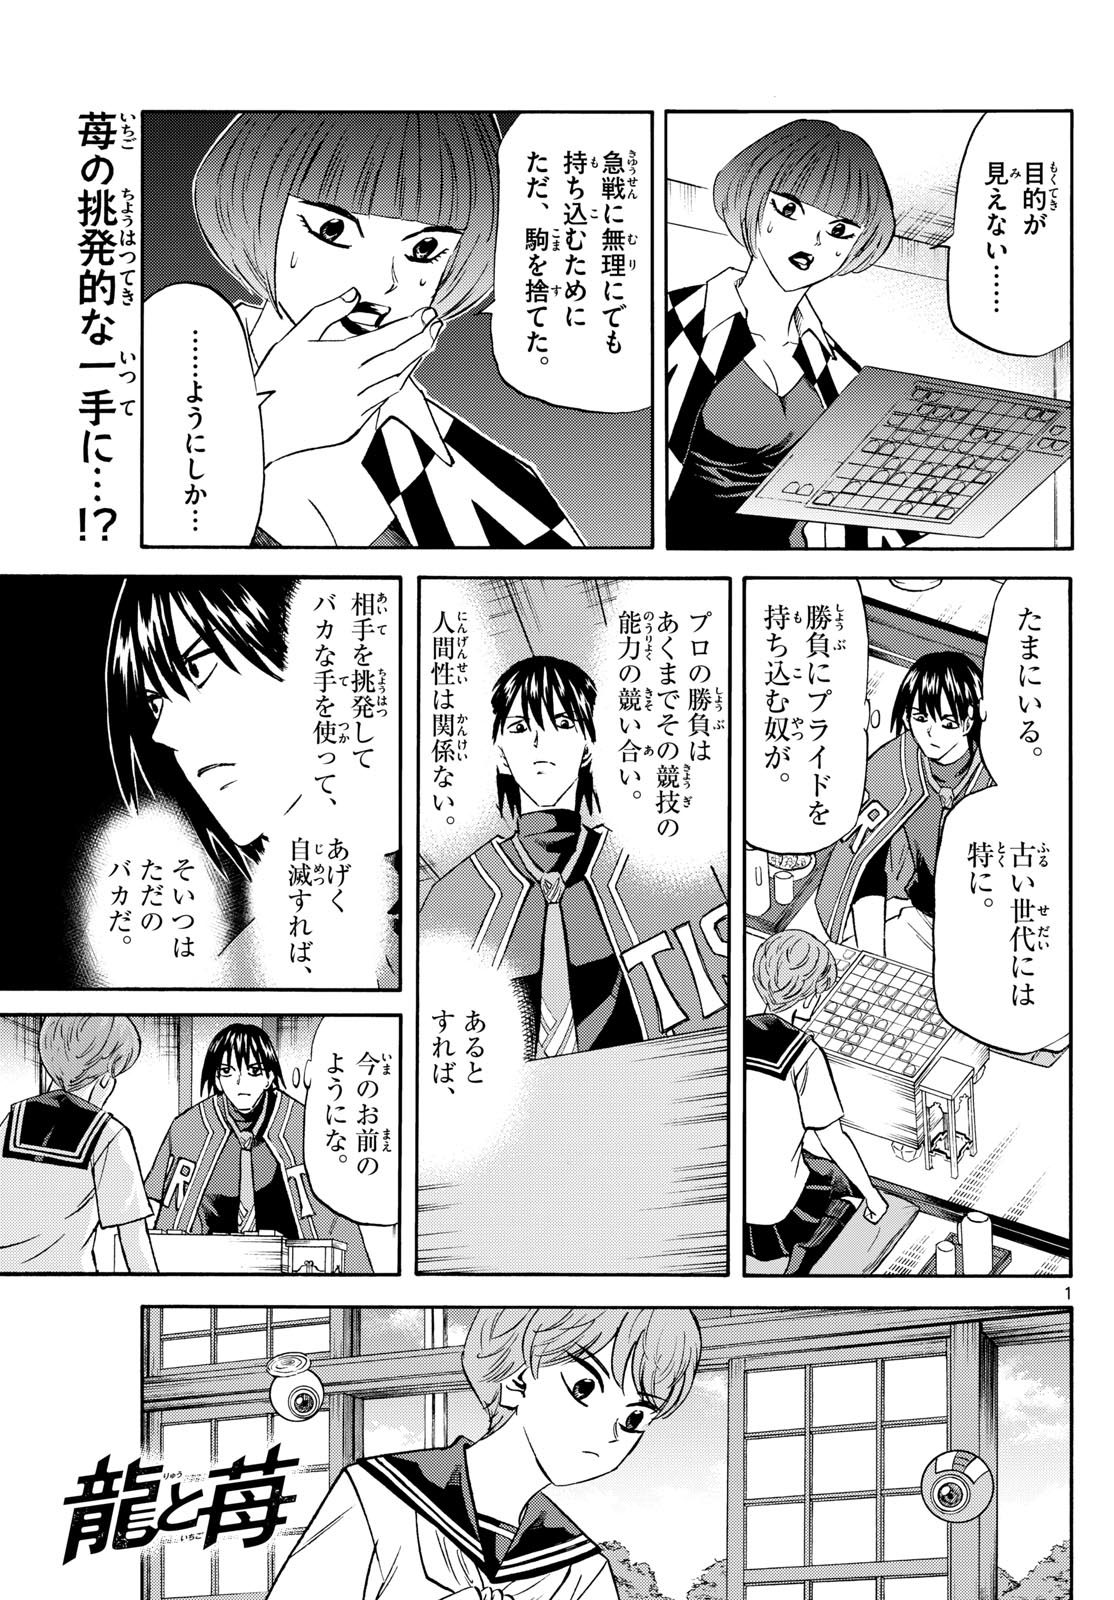 Tatsu to Ichigo - Chapter 198 - Page 1